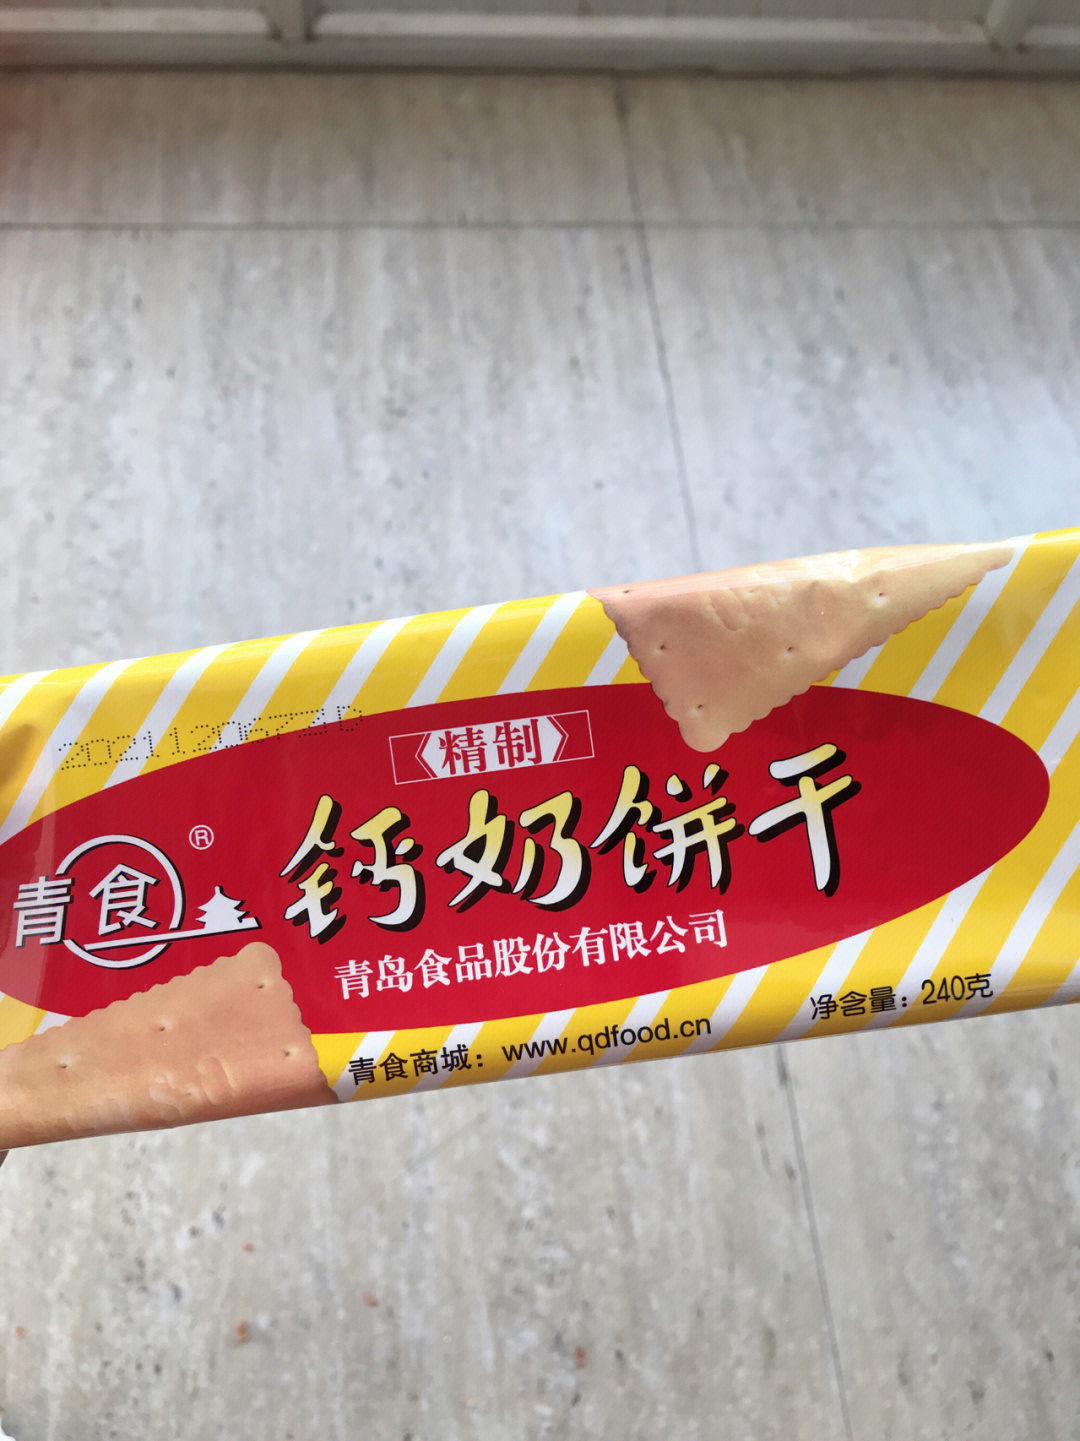 青食钙奶饼干红色包装图片